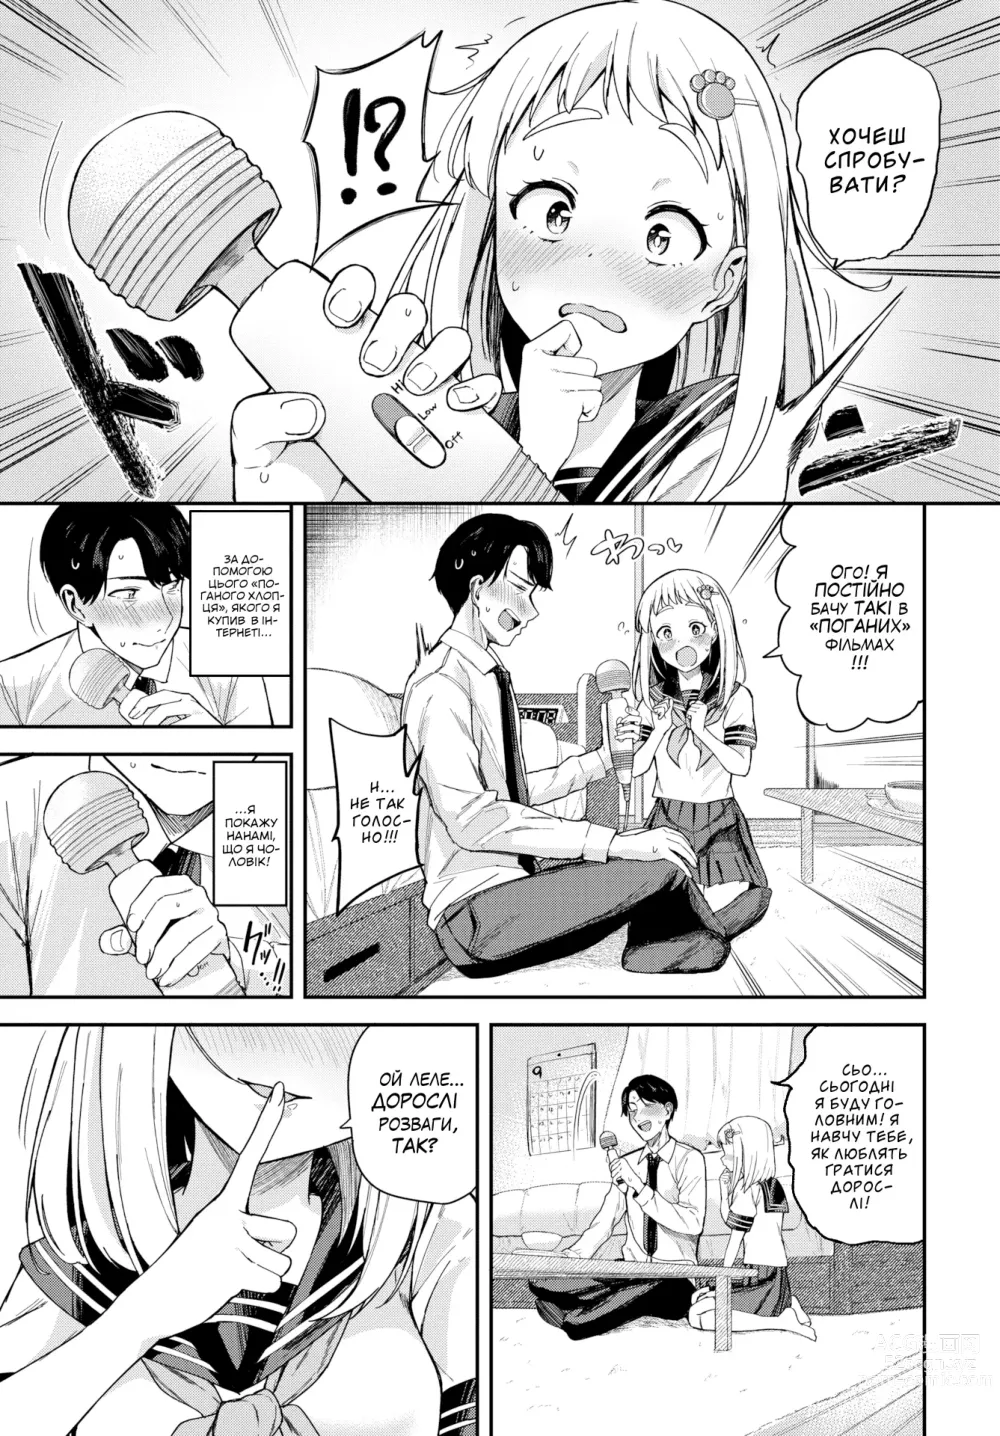 Page 3 of manga [Тоджьо Цукуші] Мій солодкий диявол [Без цензури]  LOLICORNUS (decensored)